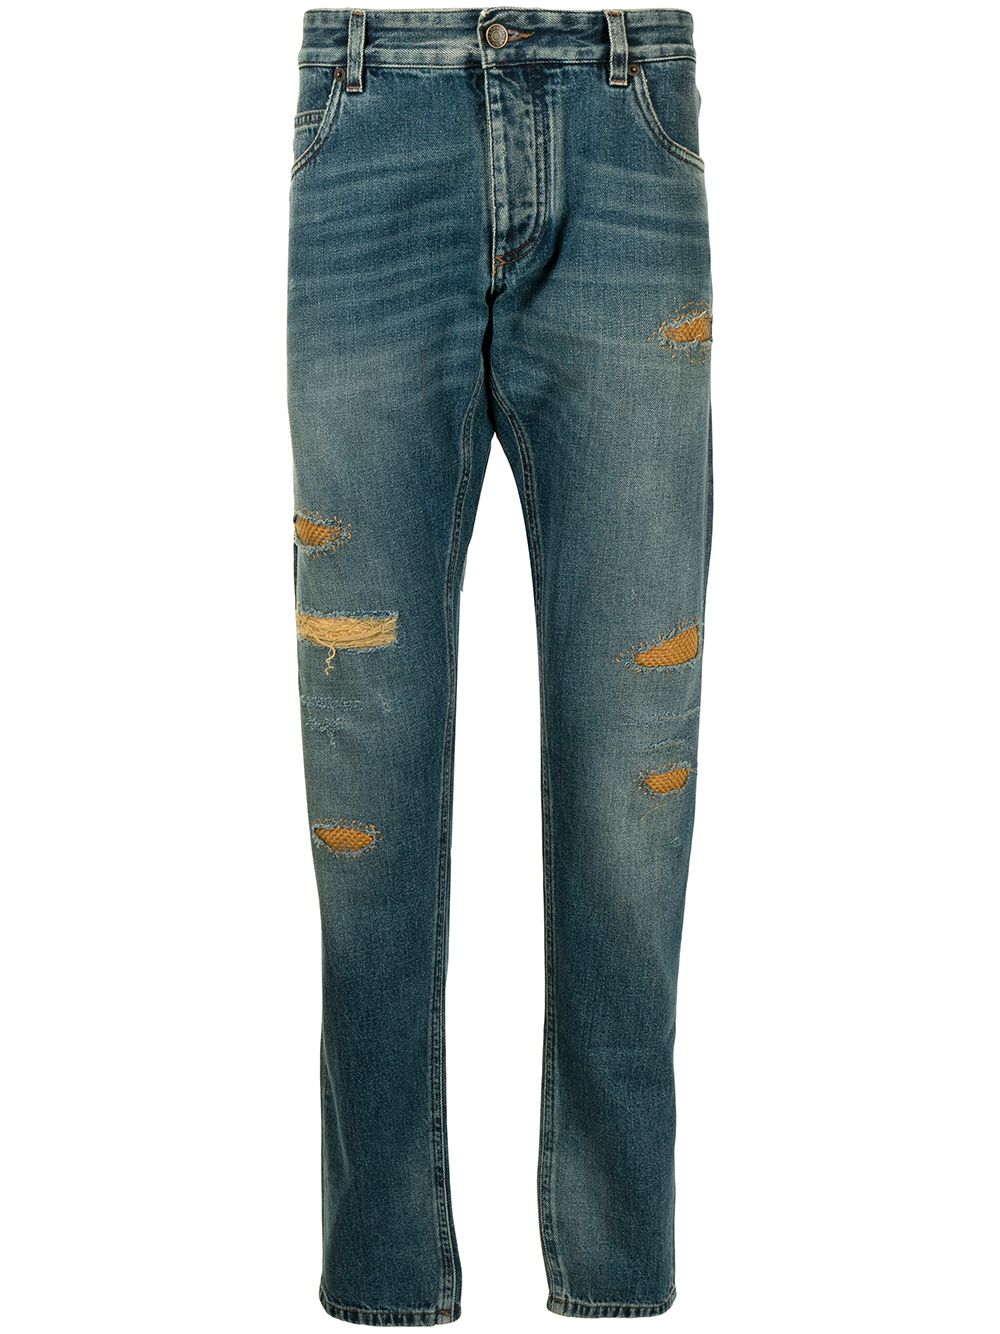 фото Dolce & gabbana прямые джинсы с прорезями